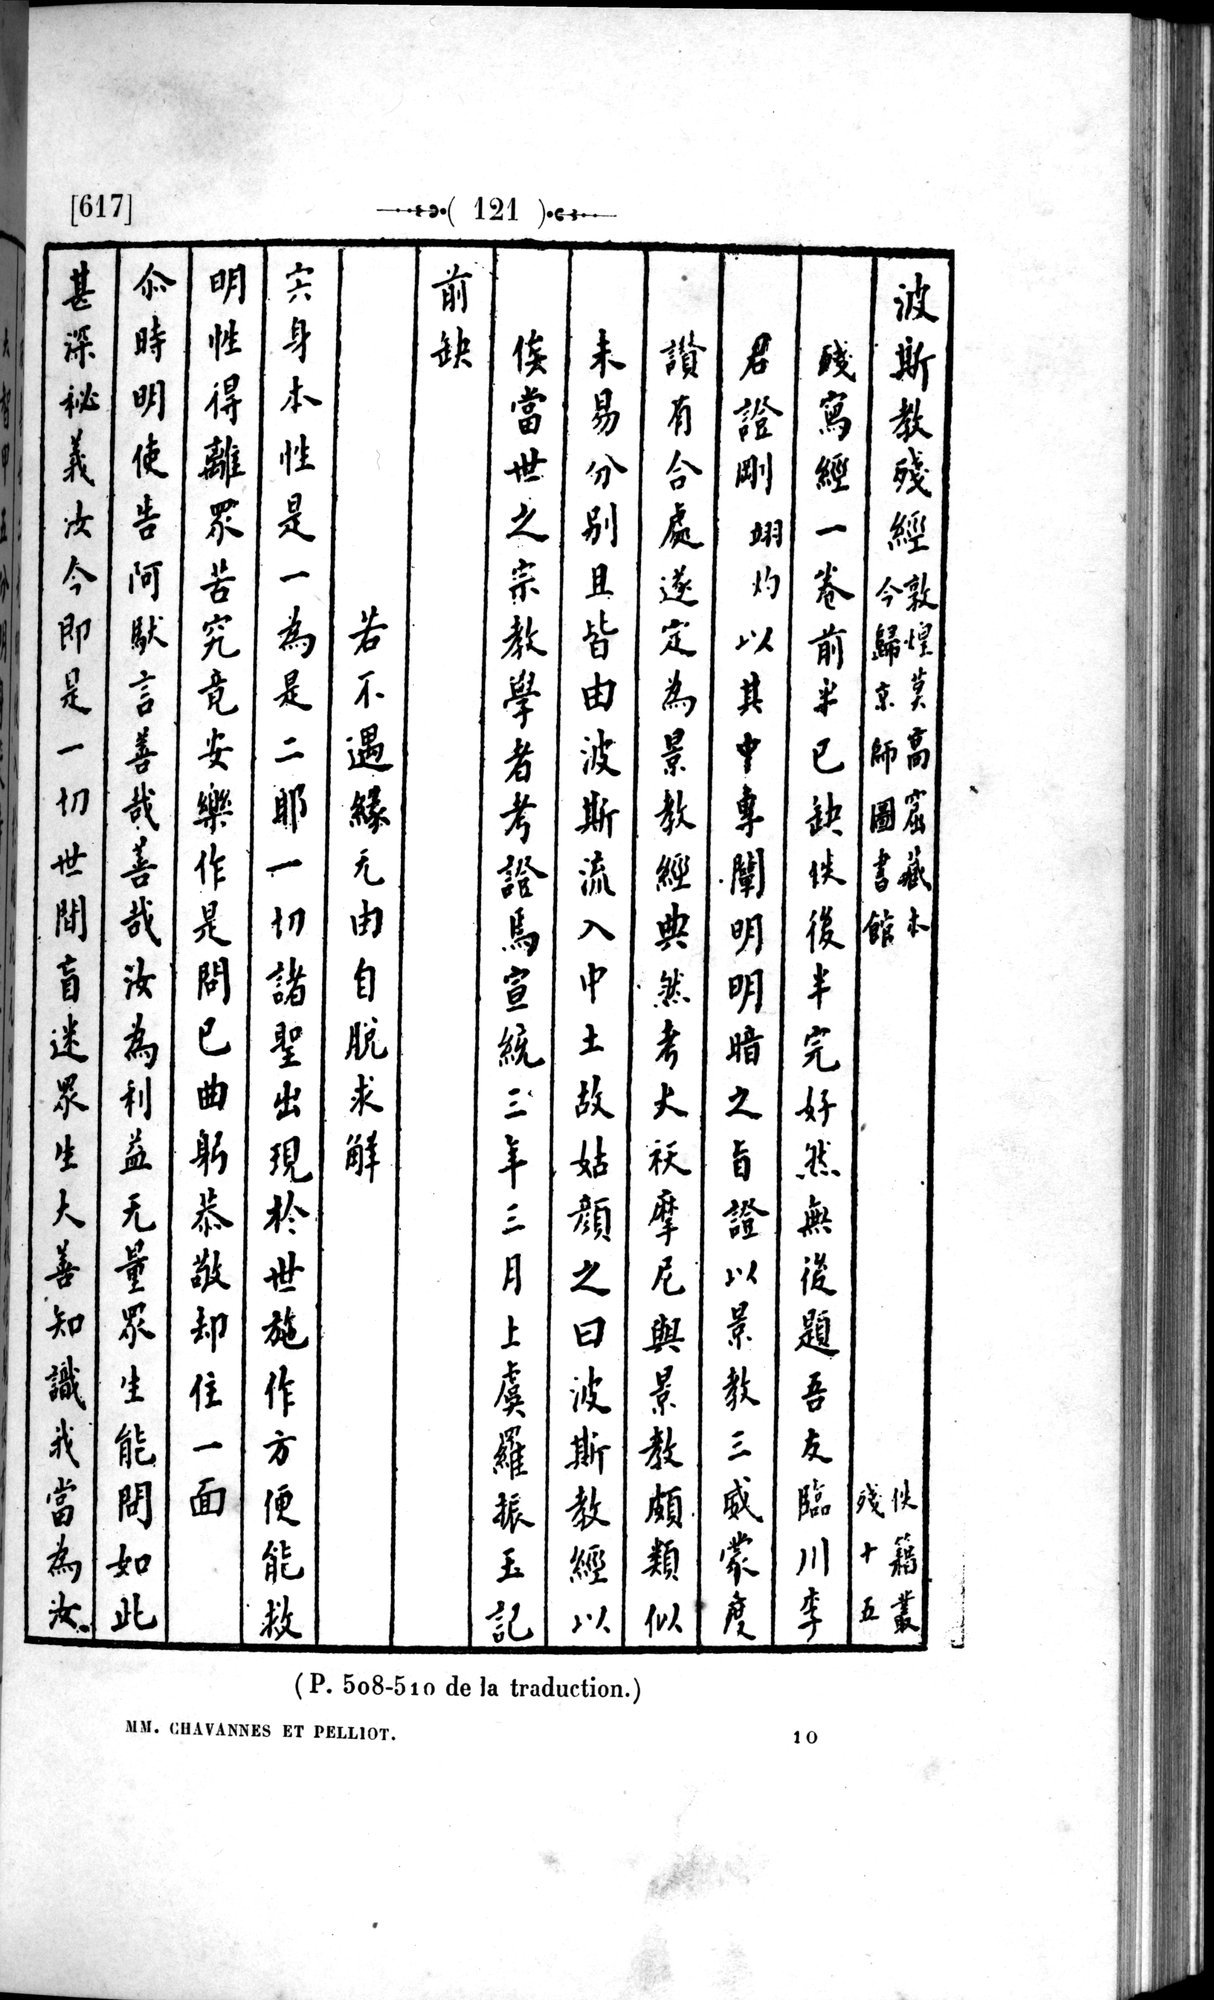 Un traité manichéen retrouvé en Chine : vol.1 / Page 131 (Grayscale High Resolution Image)